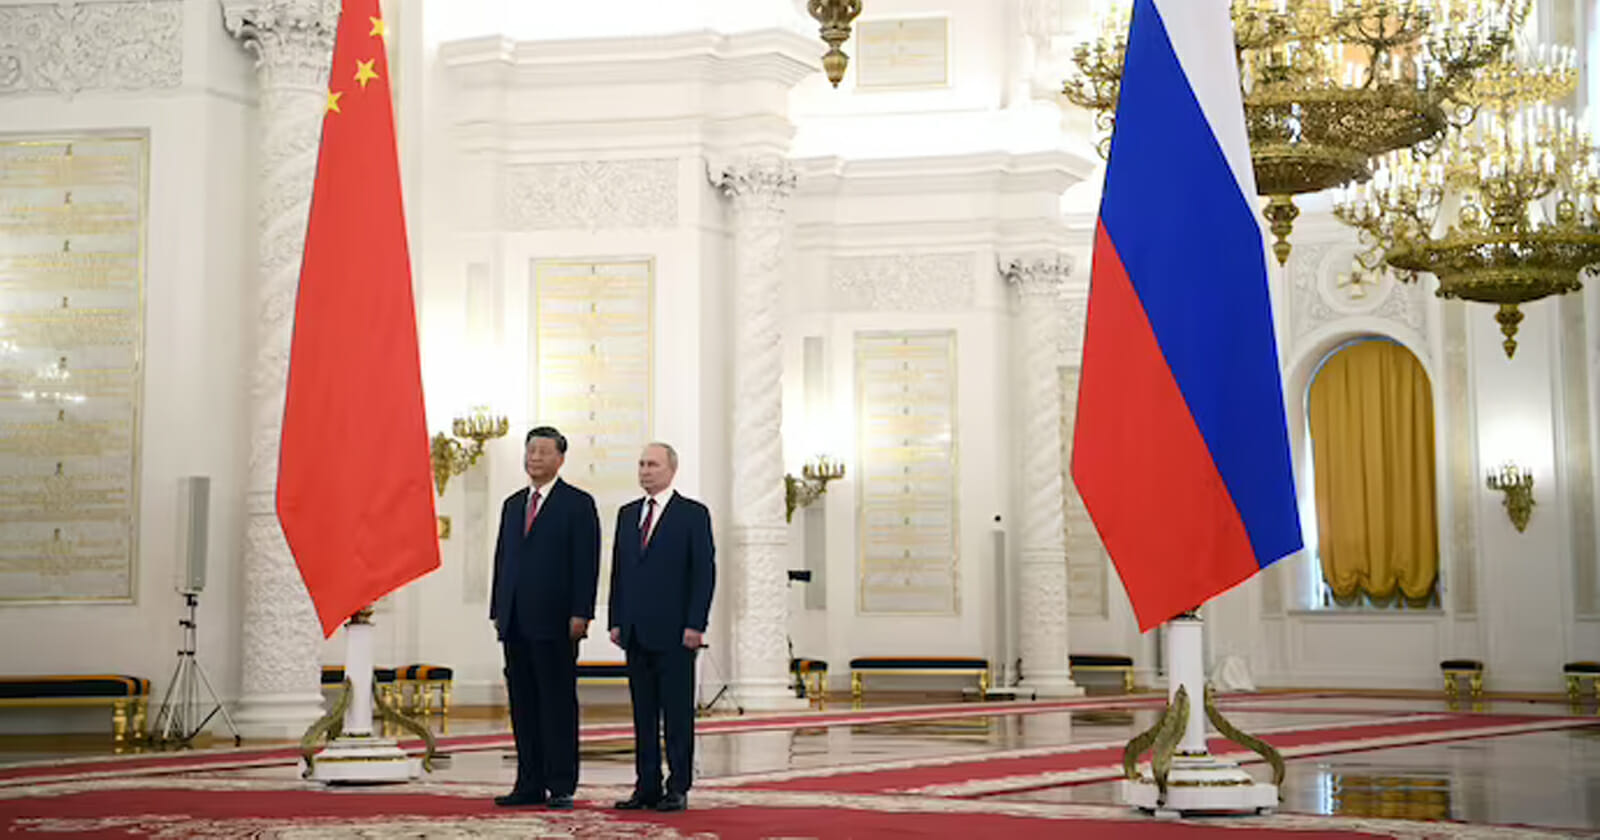 التحالف بين روسيا والصين يقلق أمريكا